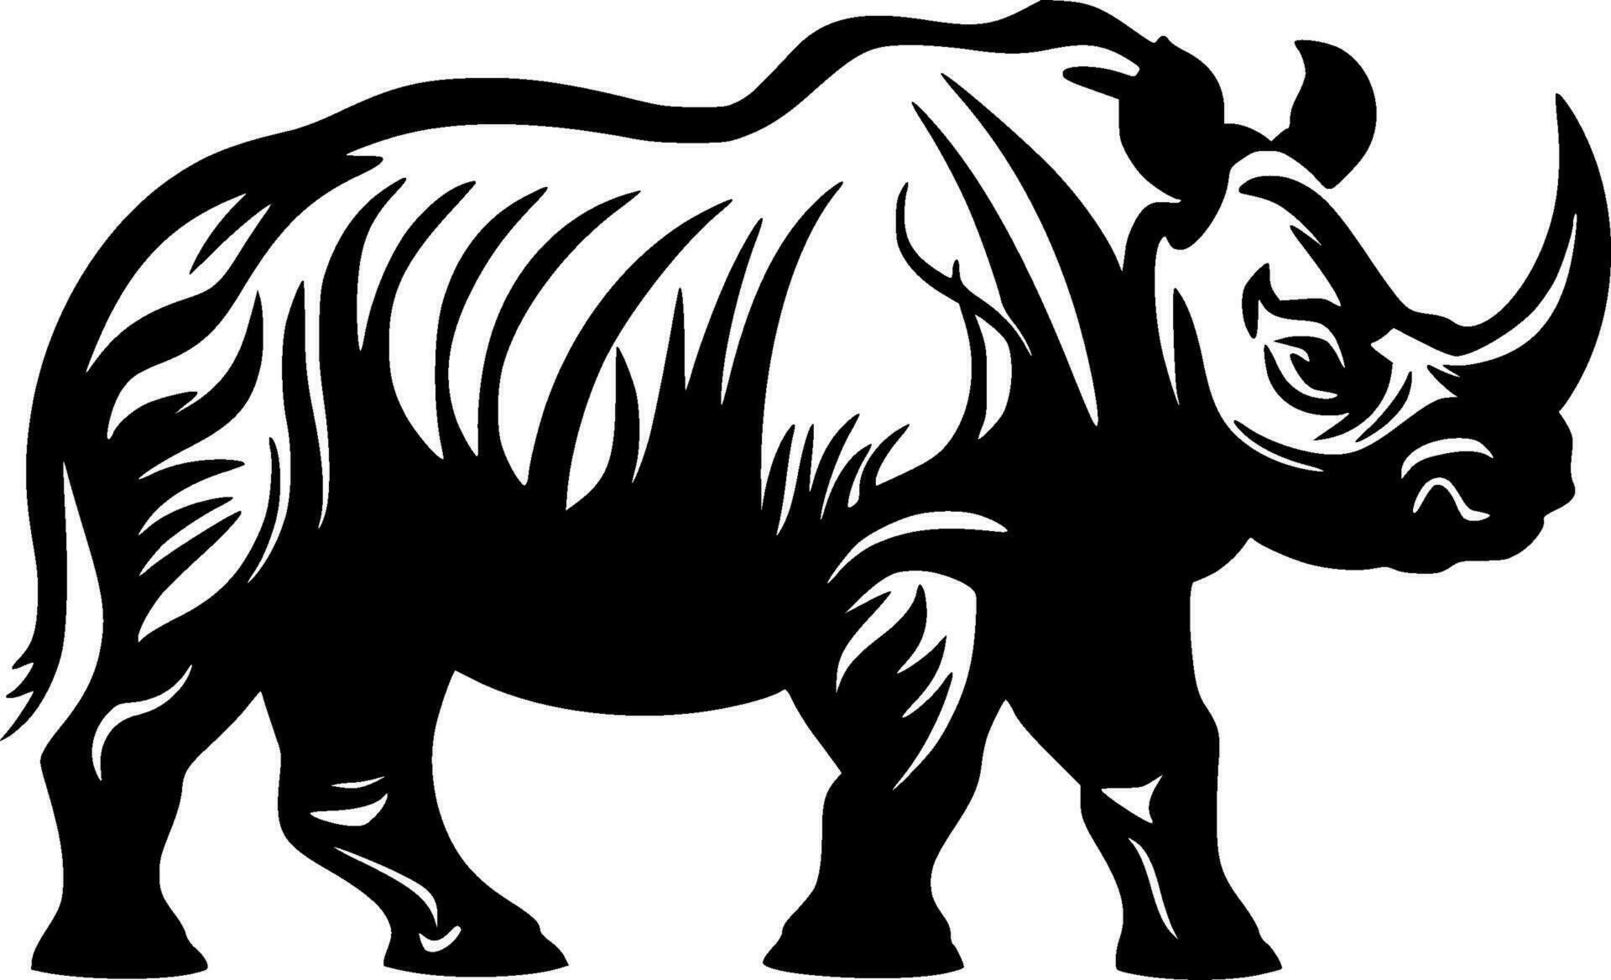 Rhinoceros, Minimalist and Simple Silhouette - Vector illustration